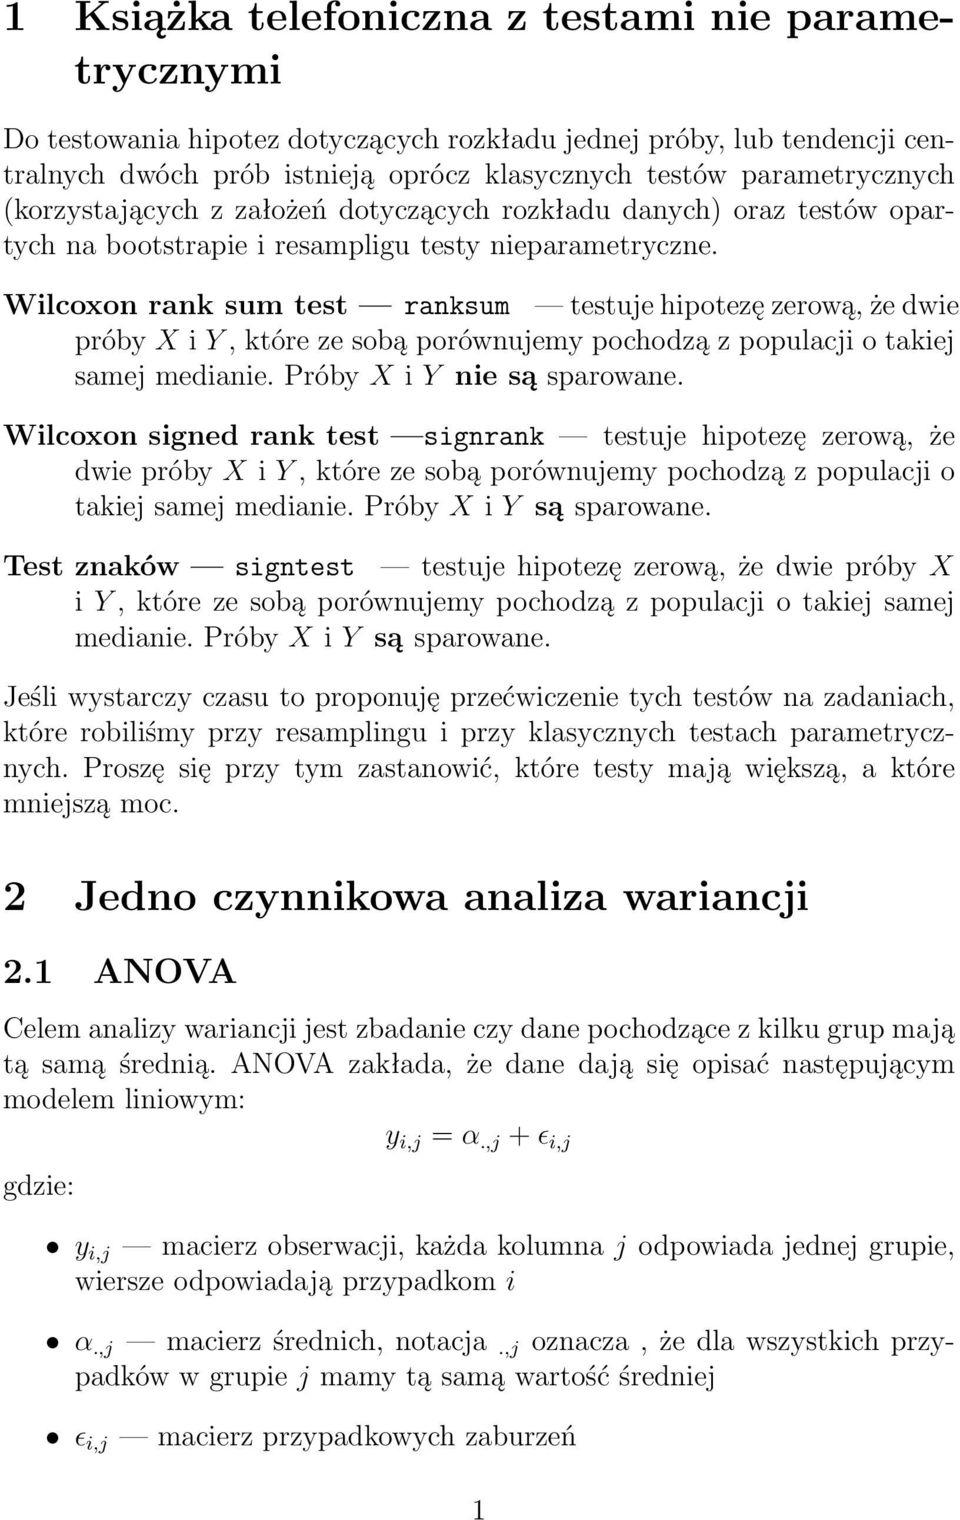 Wilcoxon rank sum test ranksum testuje hipotezę zerową, że dwie próby X i Y, które ze sobą porównujemy pochodzą z populacji o takiej samej medianie. Próby X i Y nie są sparowane.